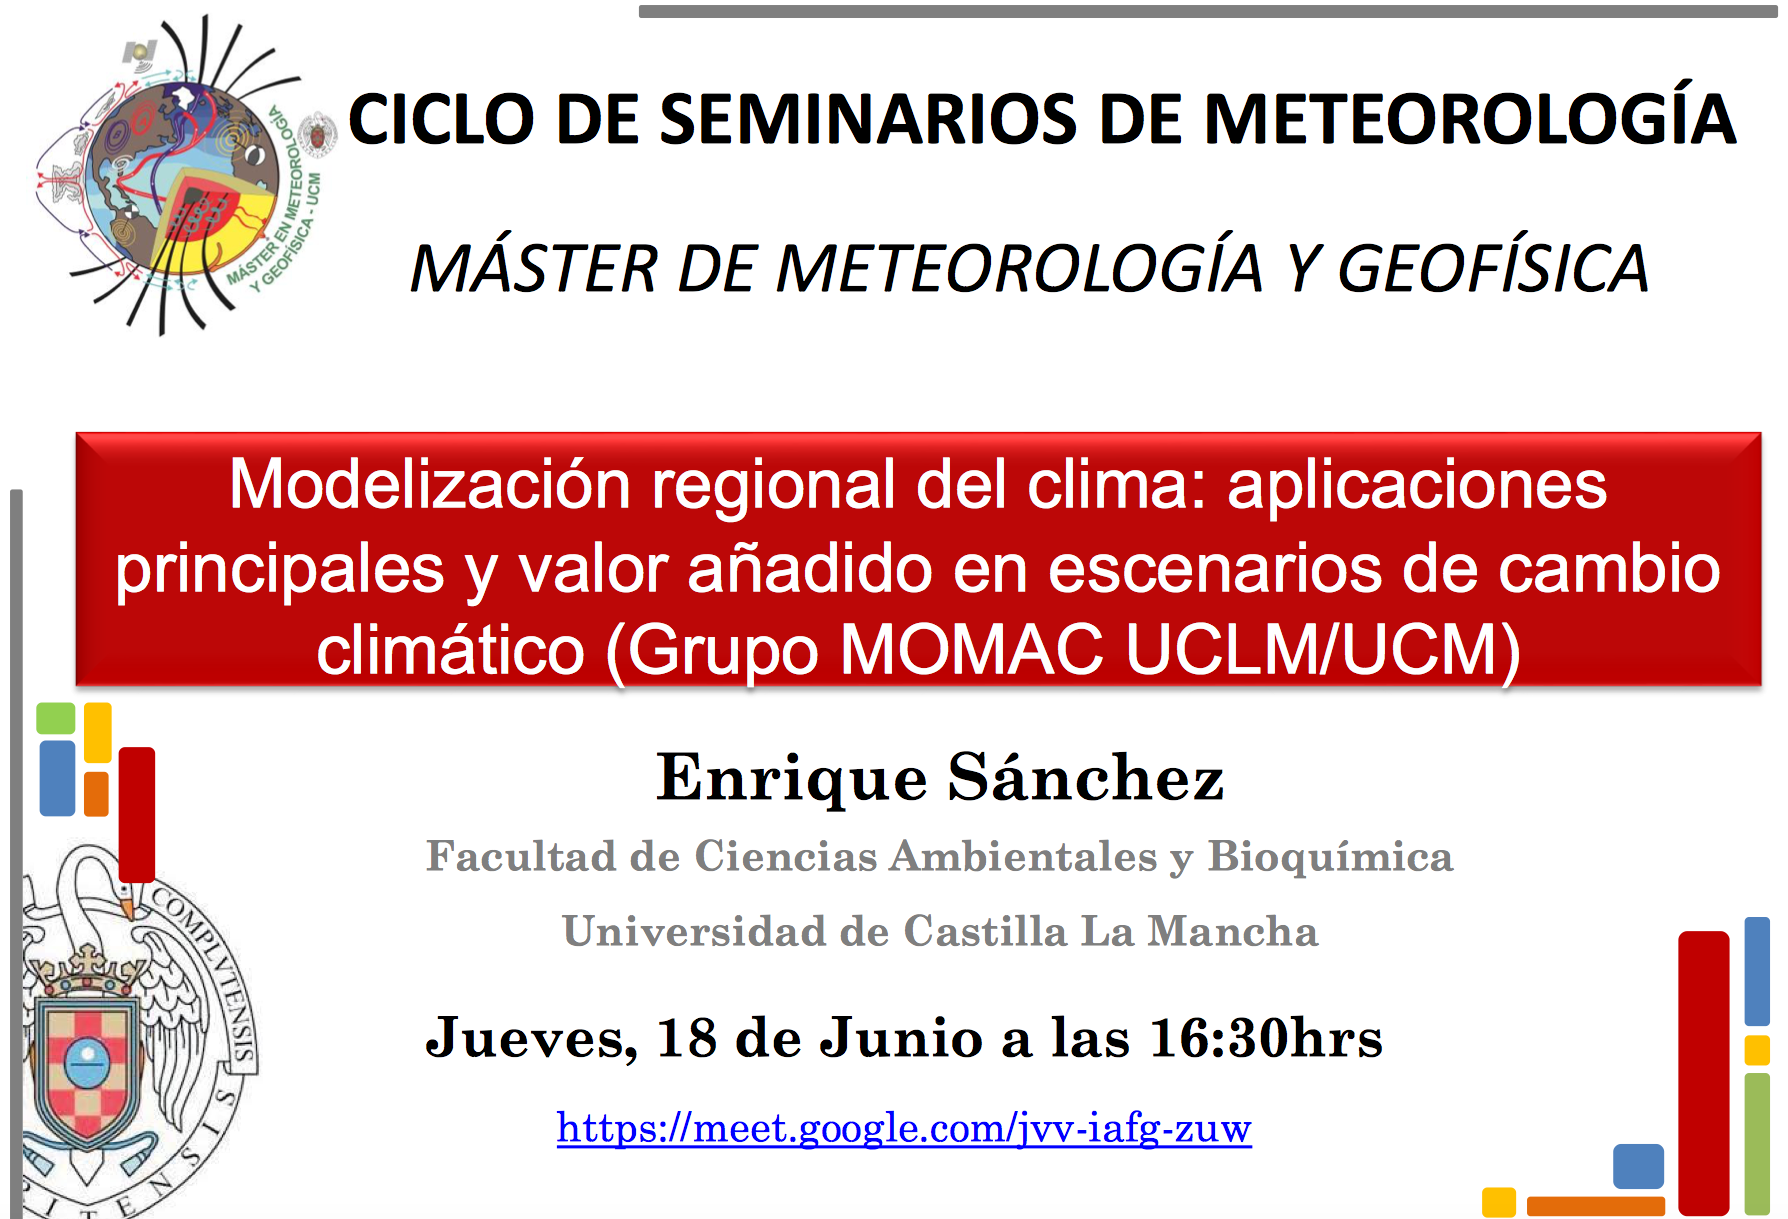 Seminario de Meteorología: Dra Enrique Sánchez Sánchez. Universidad de Castilla La Mancha